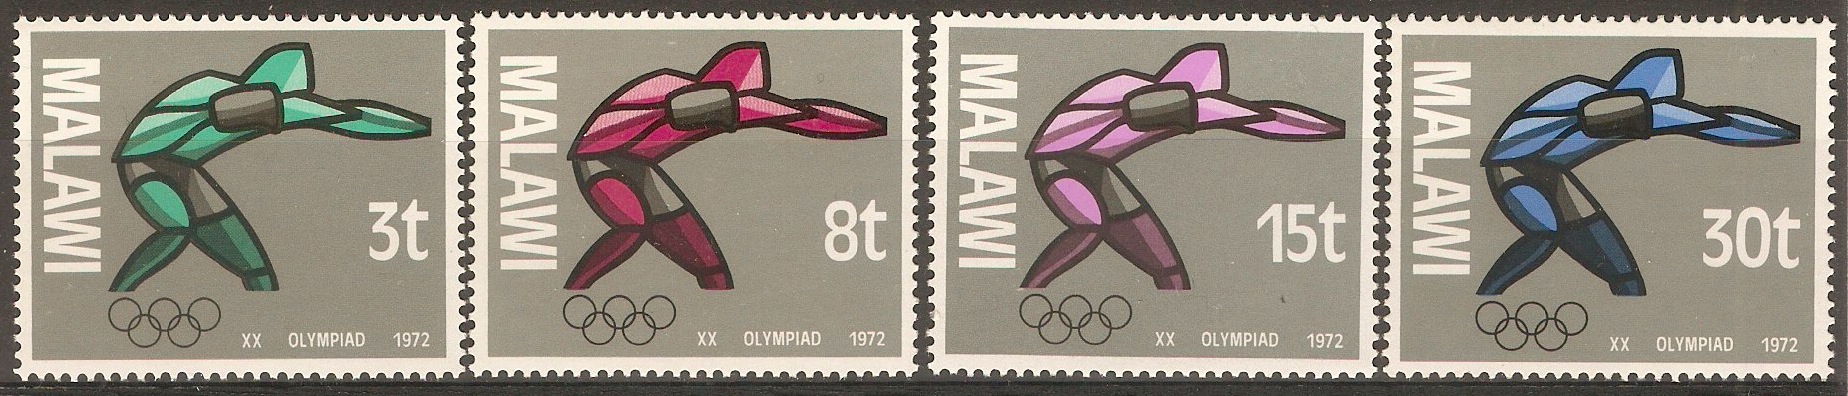 Malawi 1972 Olympic Games set. SG418-SG421.